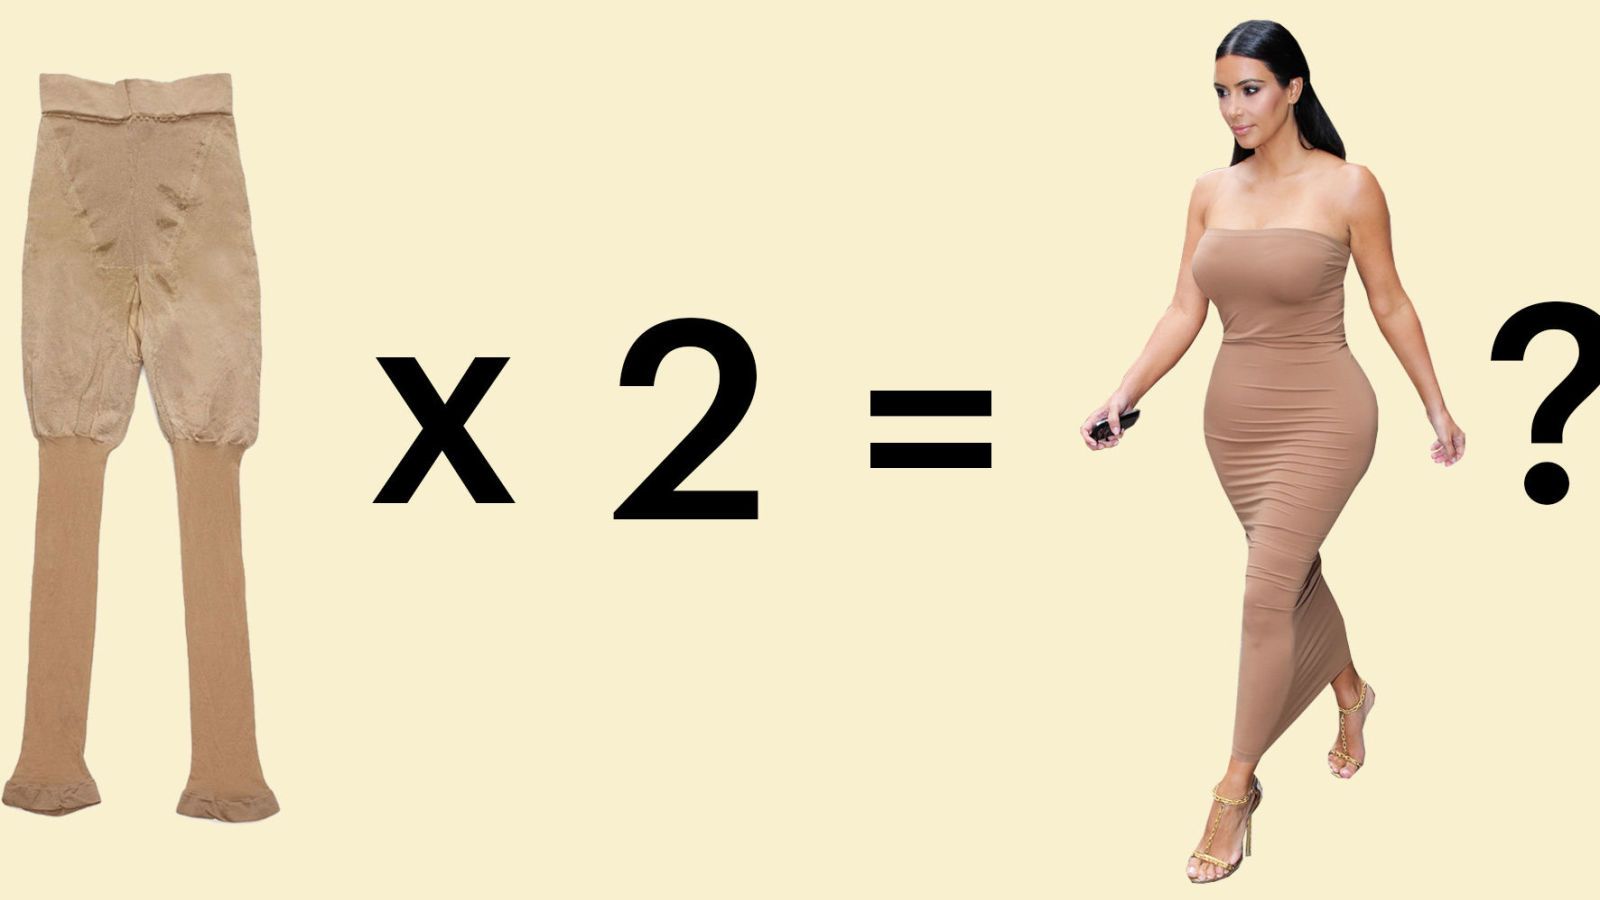 Kim Kardashian Body Shapers Review - I Wore Spanx Like Kim